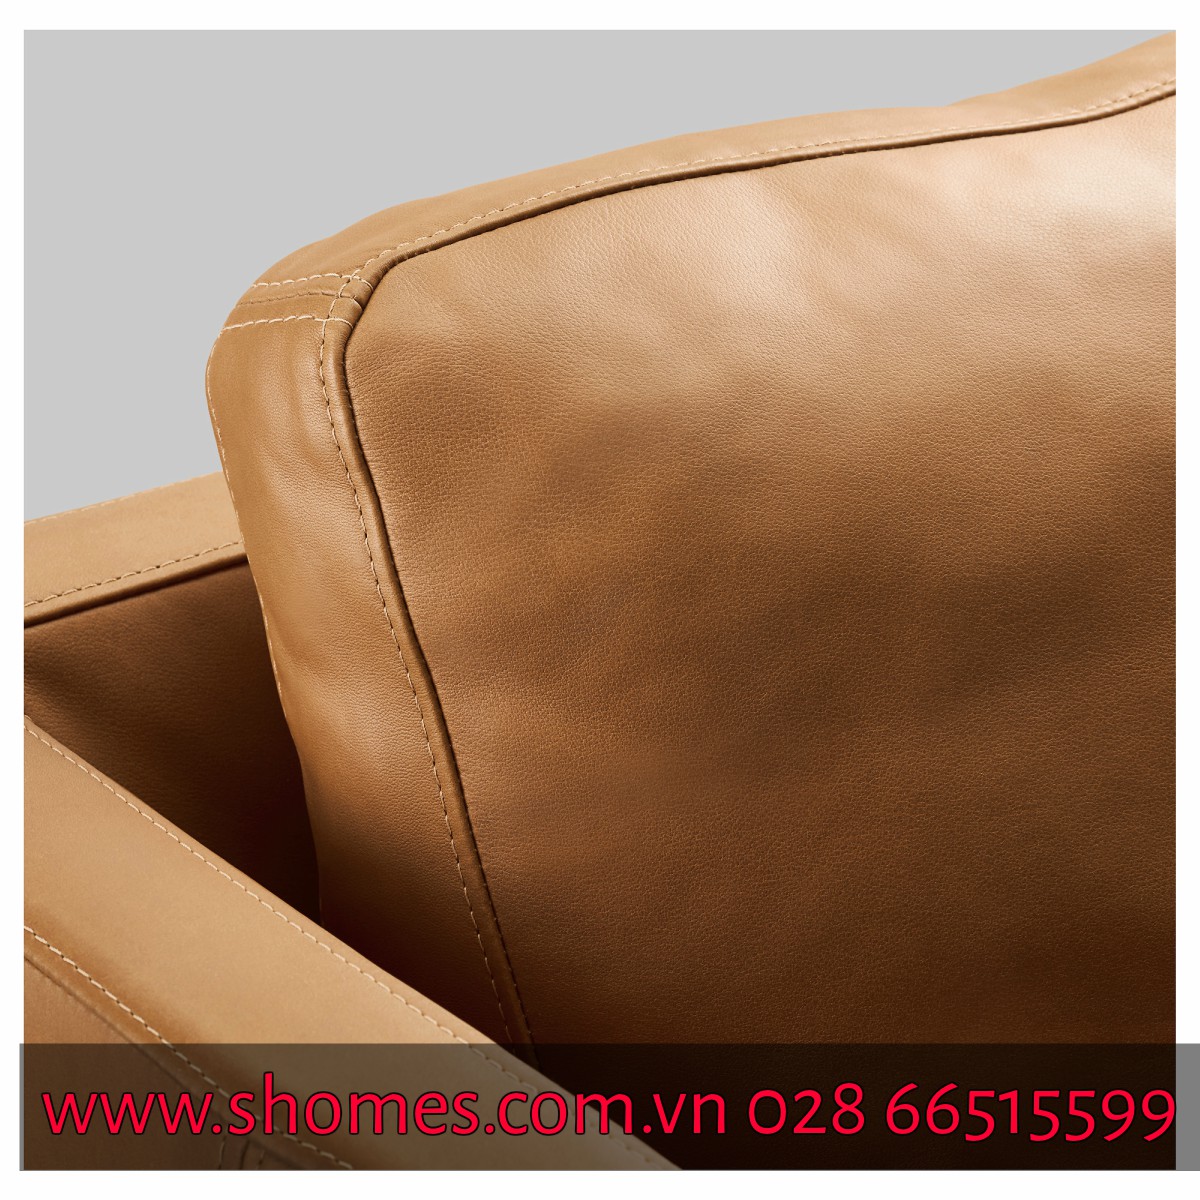 ghế sofa, ghế sofa hiện đại, ghế sofa góc, ghế sofa chất lượng, ghế sofa góc nhiều tông màu cho phòng khách, ghế sofa chất lượng, ghế sofa cao cấp, ghế sofa êm, sofa đẹp cho phòng khách, sofa hiện đại nhất hiện nay